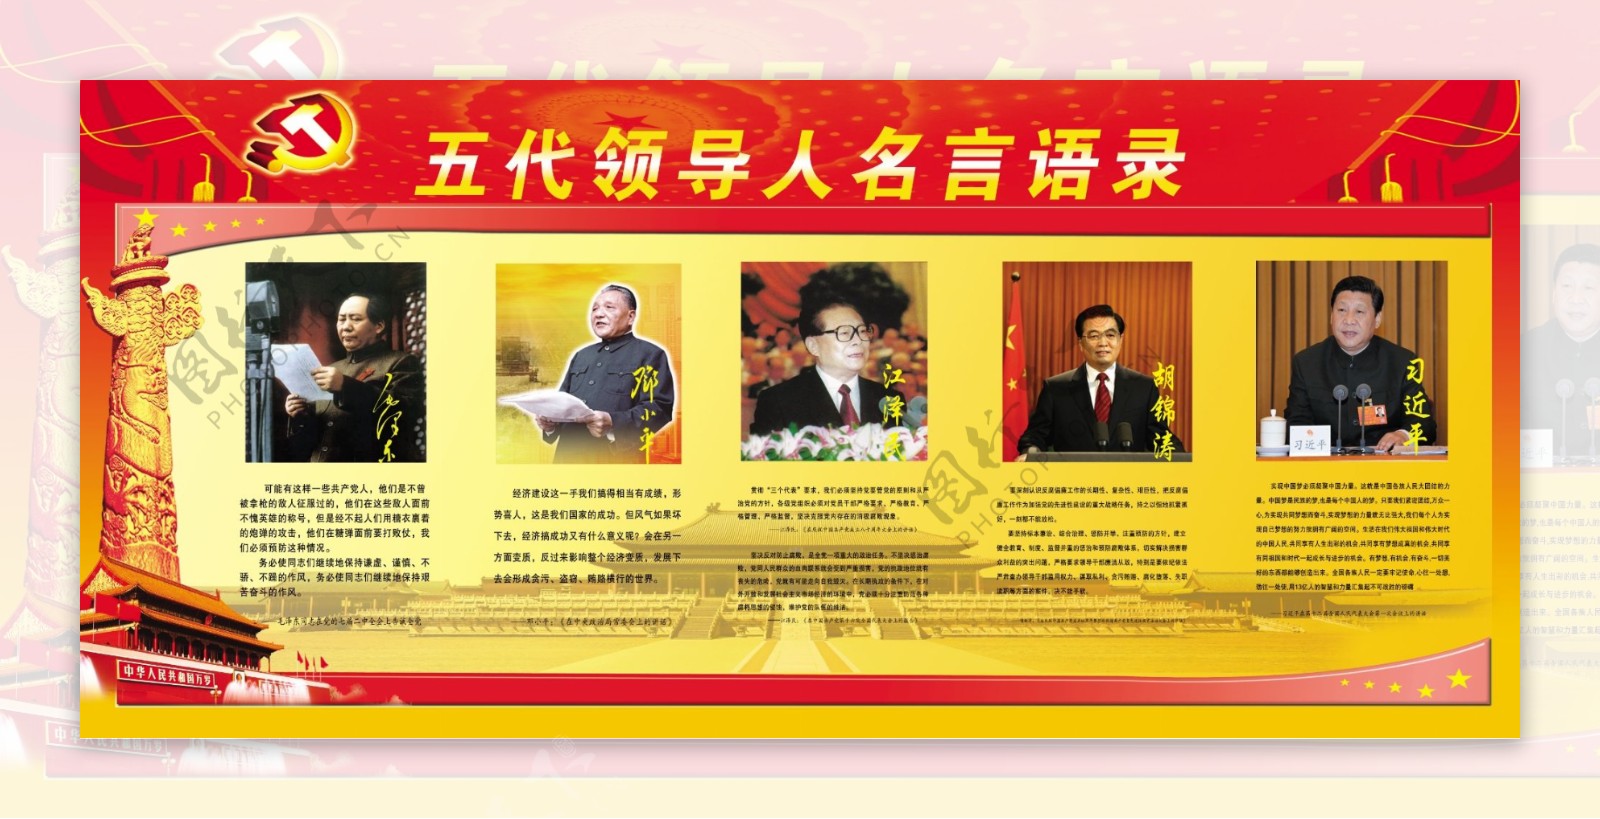 中国五代领导人军队题词金句文化墙_微图网-(www.oopic.cn)专业商务素材网站免费下载